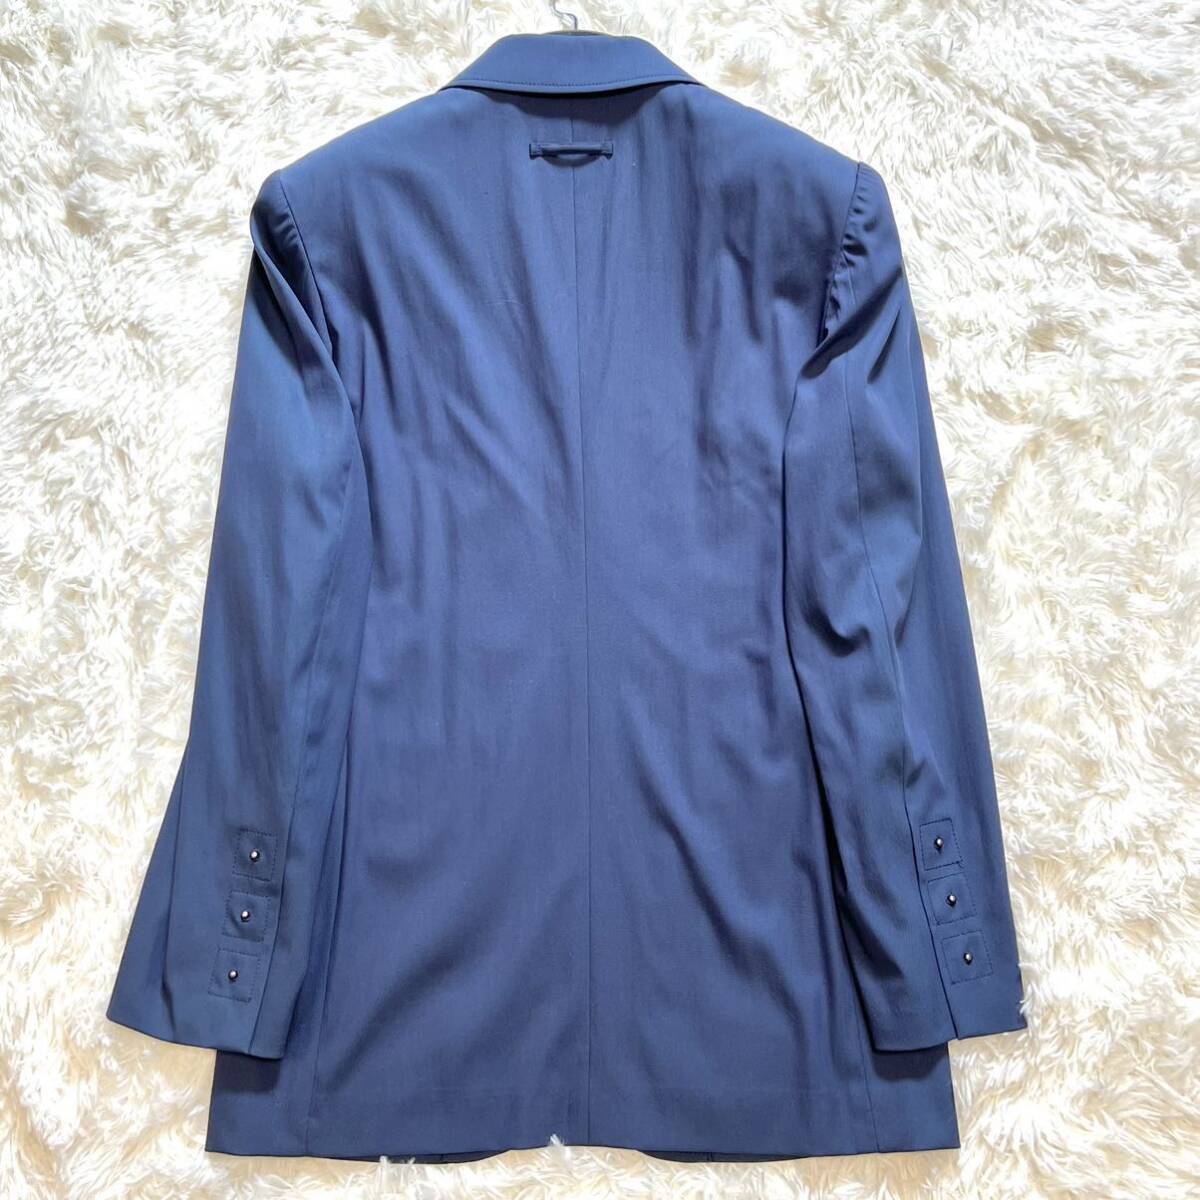  супер редкий Jean Paul Gaultier HOMME Jean-Paul Gaultier tailored jacket 48 темно-синий голубой архив шар насекомое L-XL одиночный мужской 